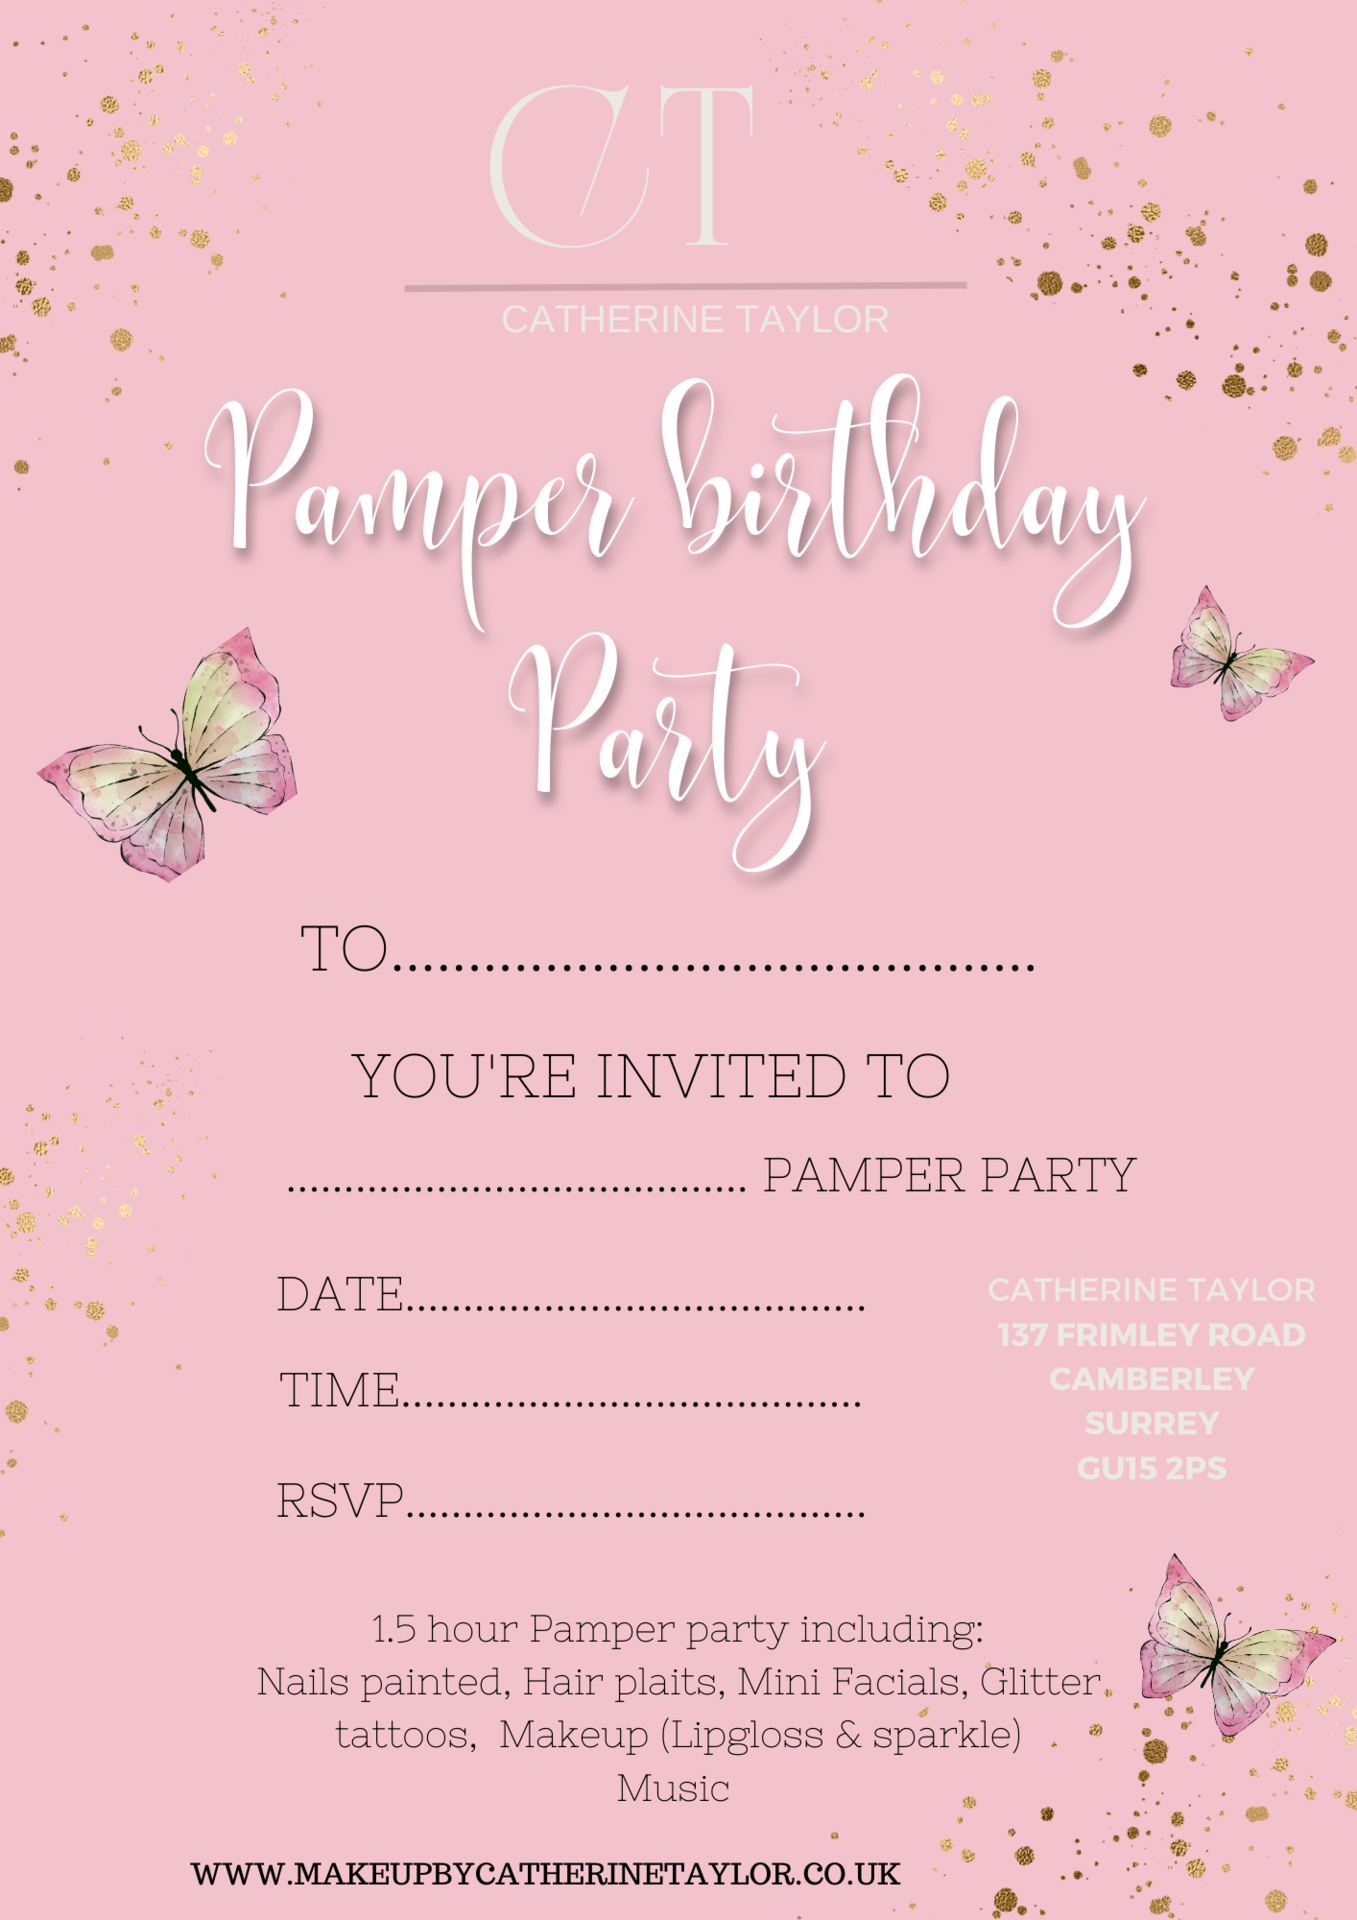 Children's Pamper Parties in Surrey, Berkshire, Hampshire, Camberley. Kid pamper parties